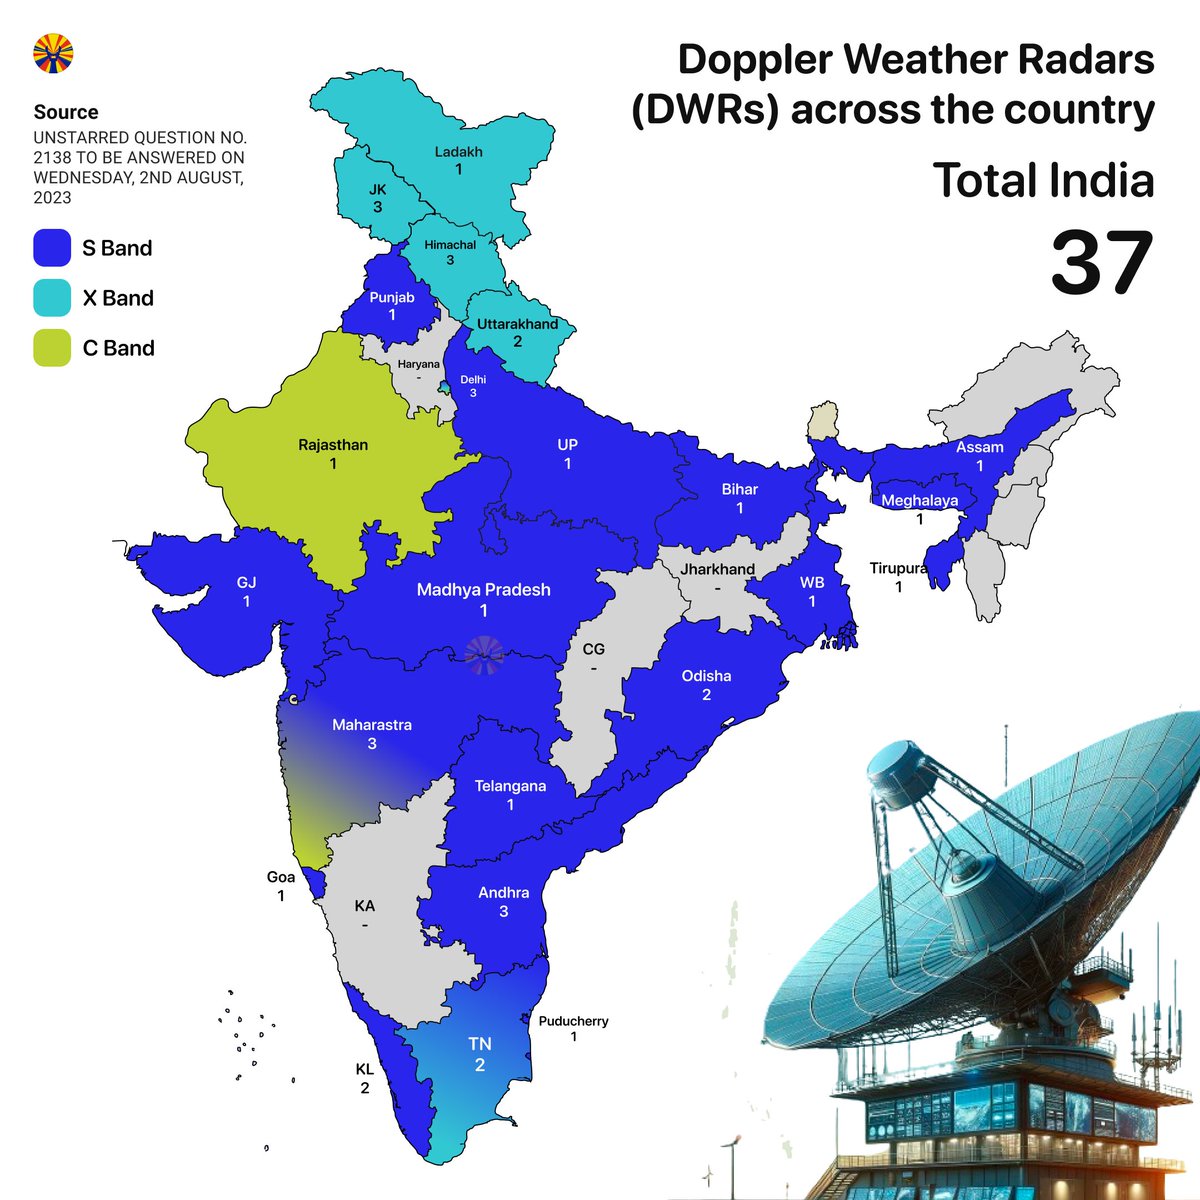 Doppler Weather Radars China: 217 USA: 159 India: 37